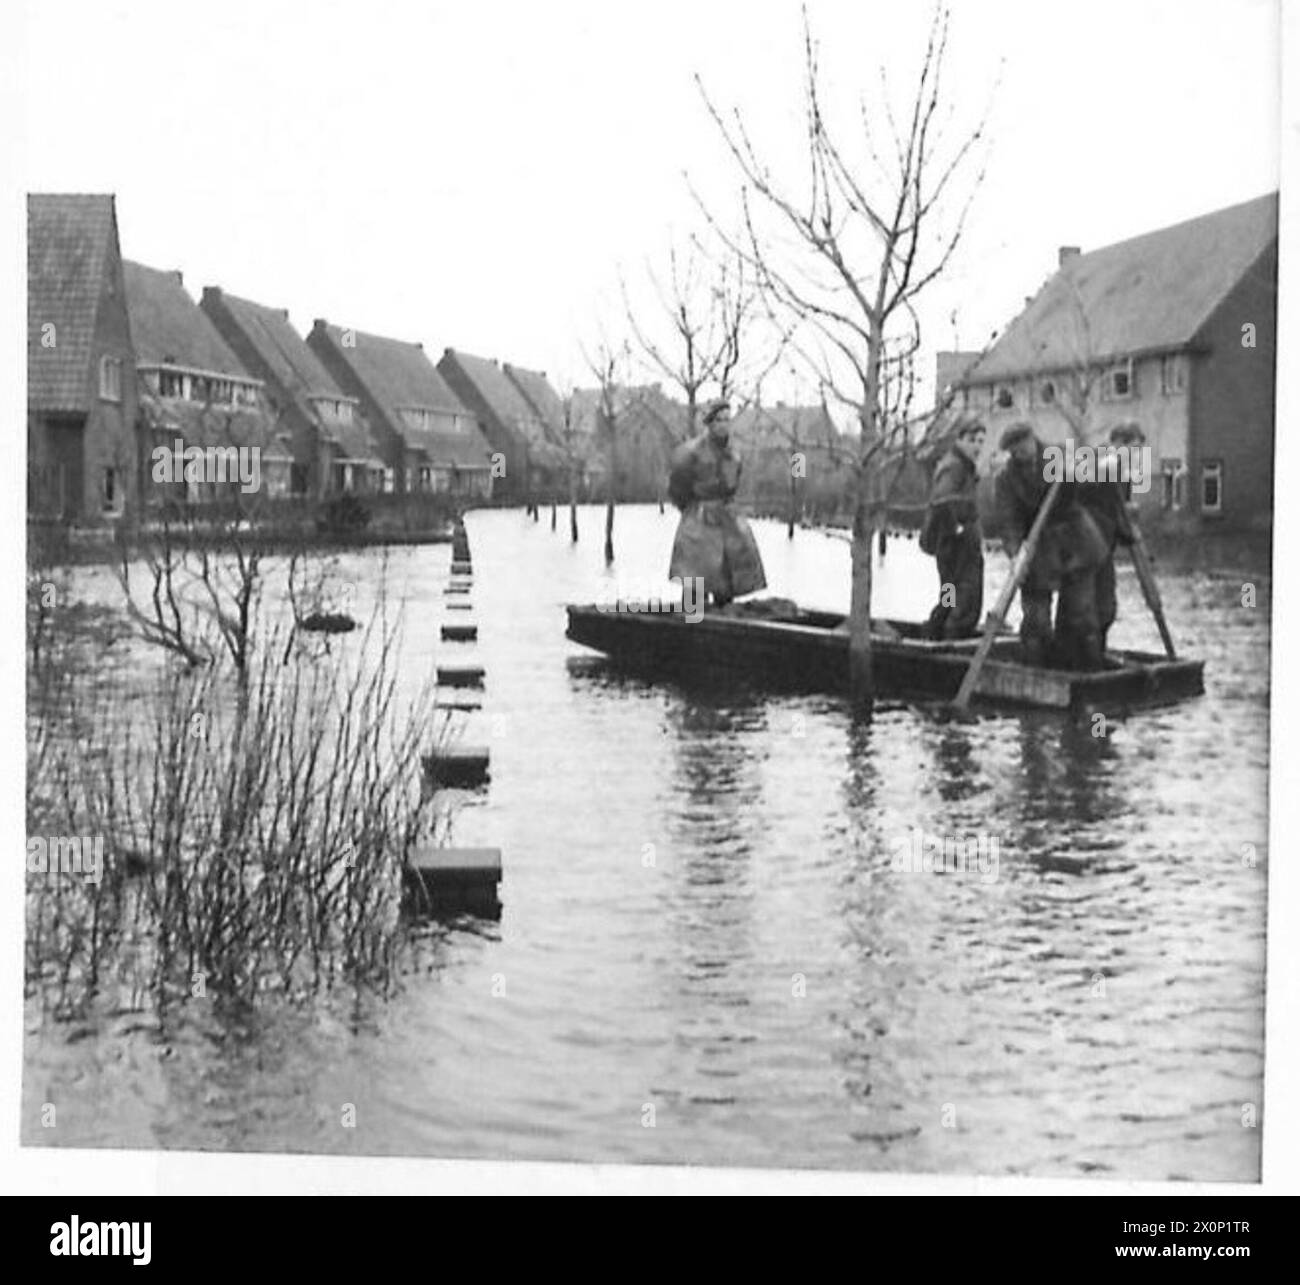 L'ÎLE INONDÉE DE WALCHEREN - bateau de sauvetage passant dans la rue inondée. Négatif photographique, Armée britannique, 21e groupe d'armées Banque D'Images